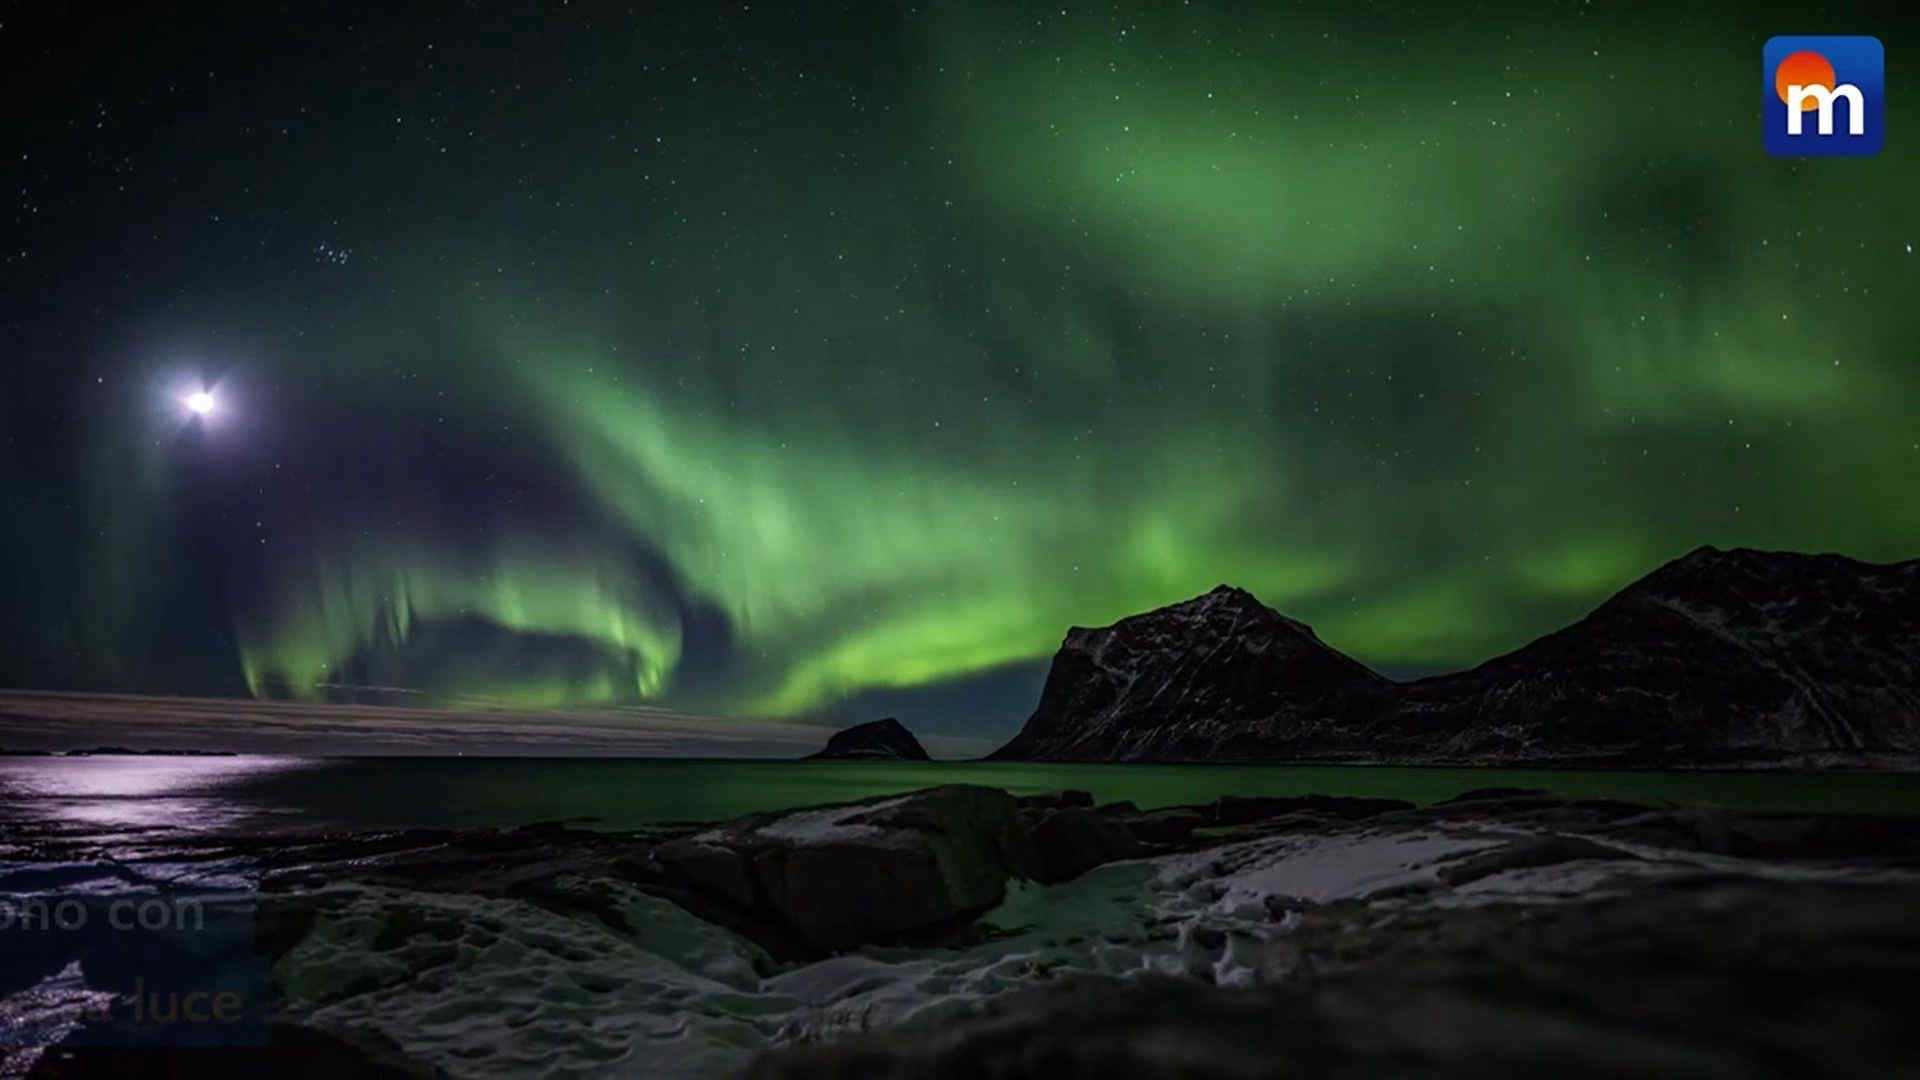 Aurore boreali in Europa: lo spettacolo arriva fino in Francia, le bellissime immagini